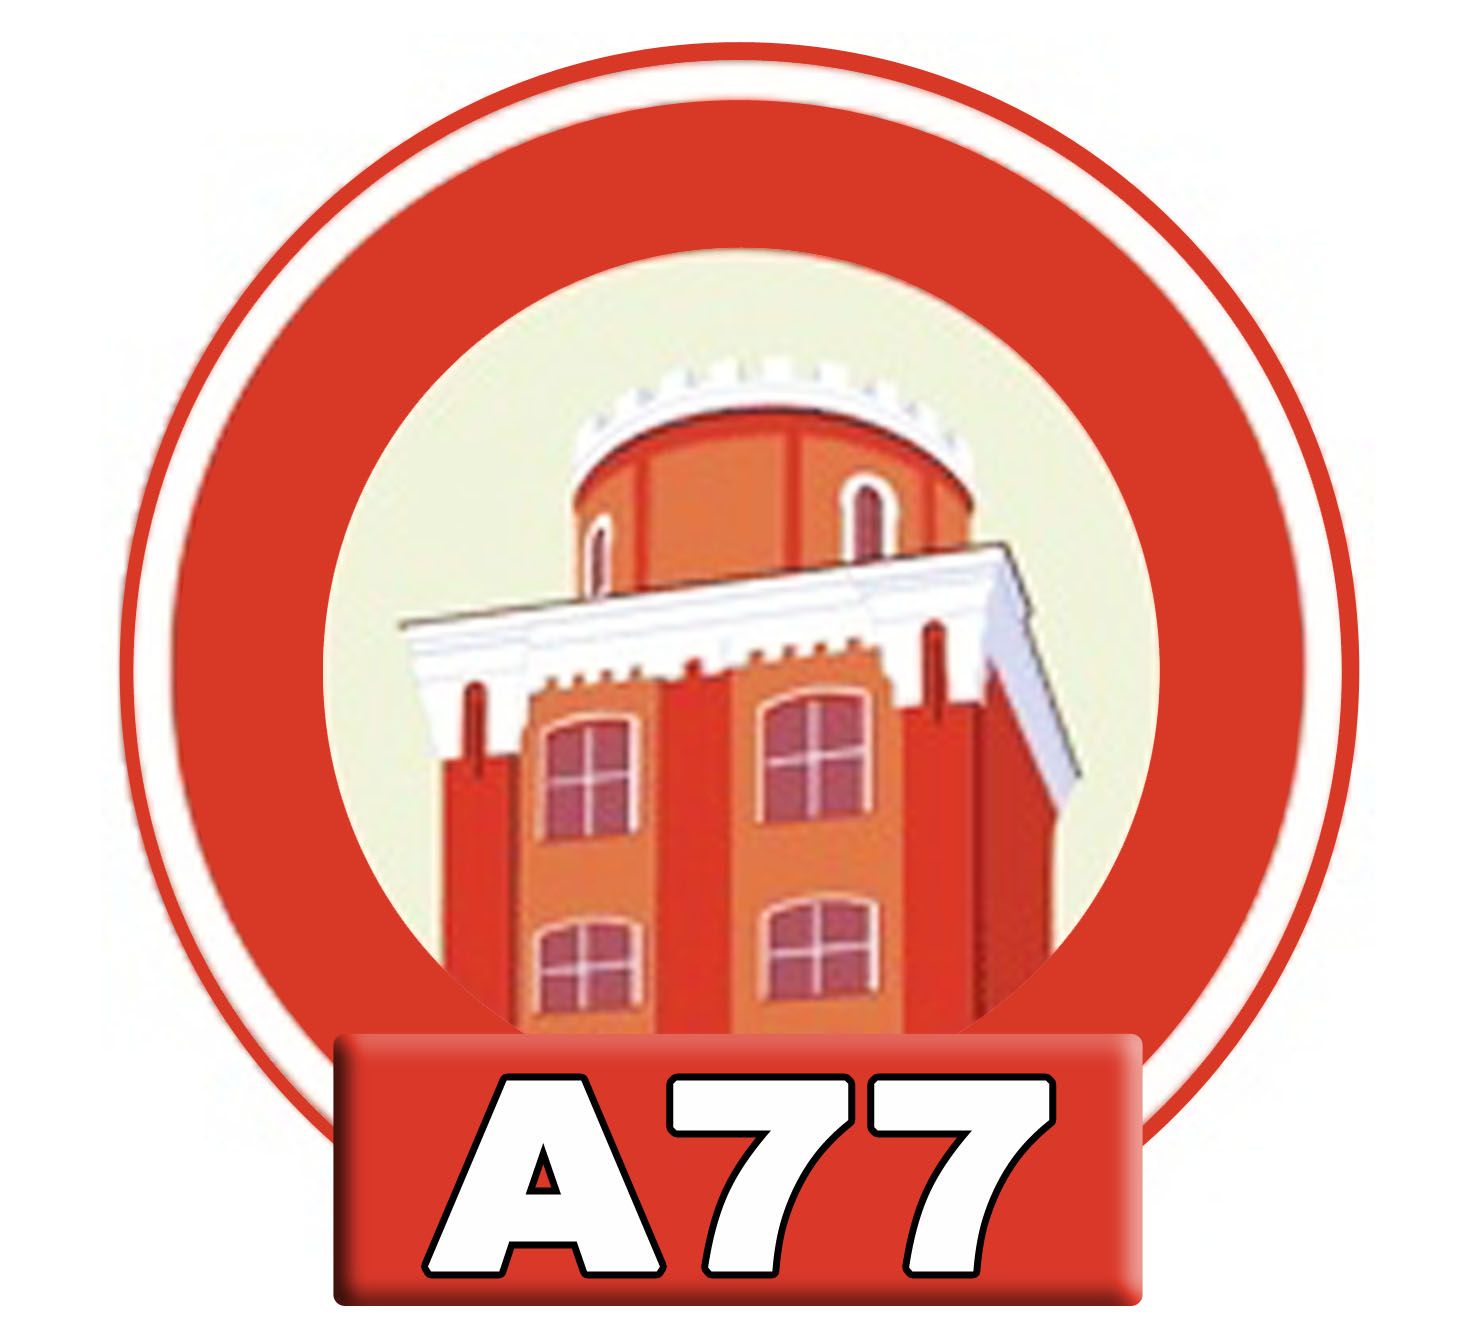 Лого для сайта по коммерческой недвижимости A77.RU - дизайнер aix23